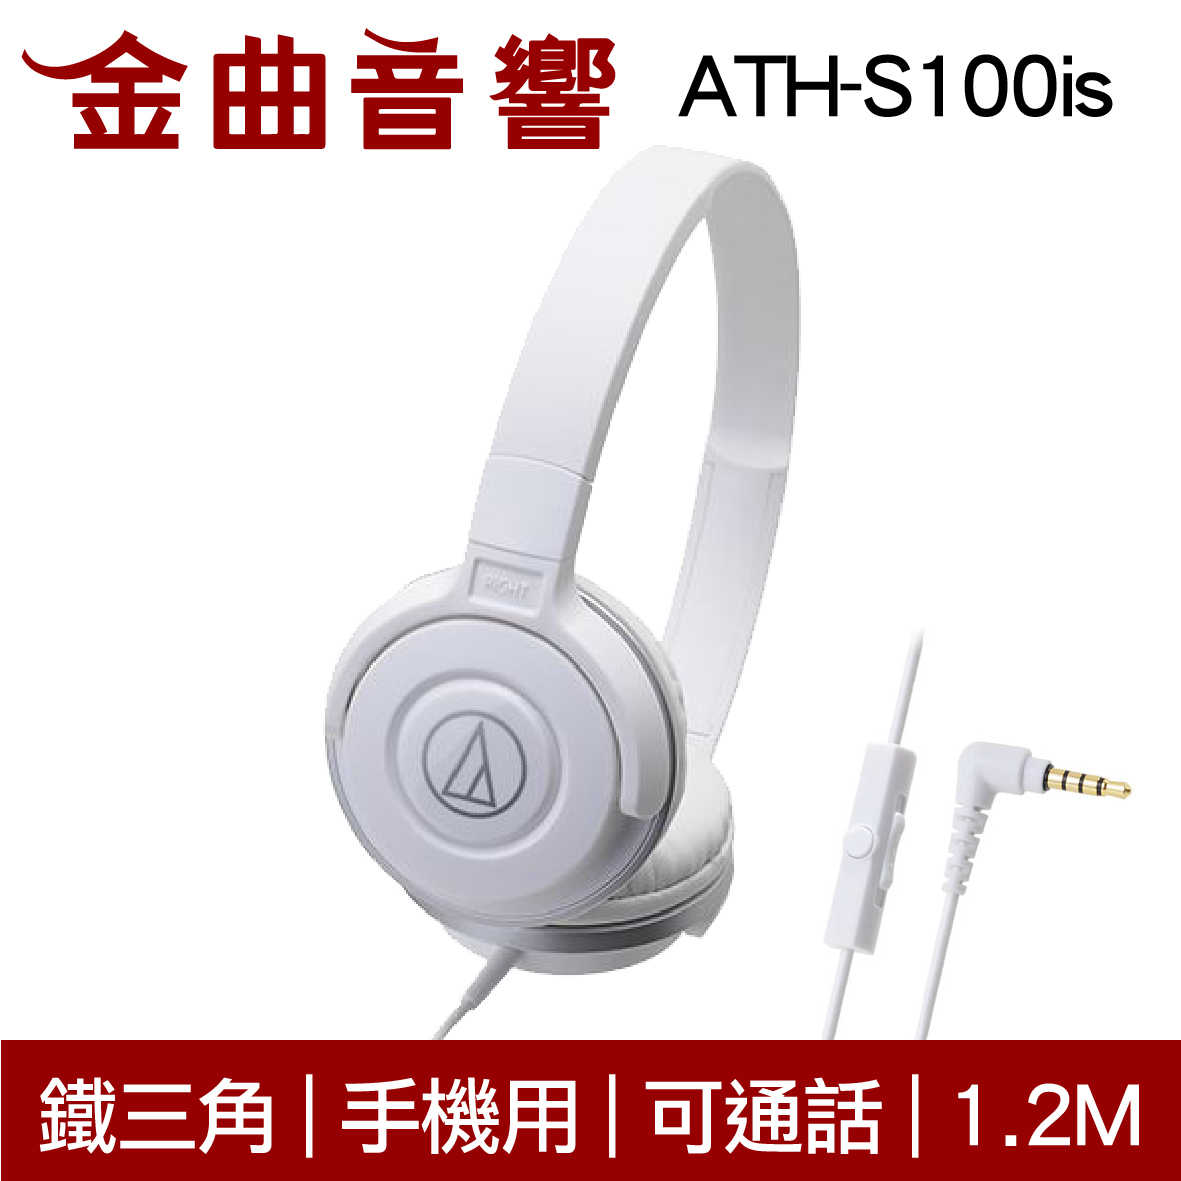 鐵三角 ATH-S100is 黑藍色 兒童耳機 大人 皆適用 耳罩式 有麥克風版 IOS/安卓適用 | 金曲音響